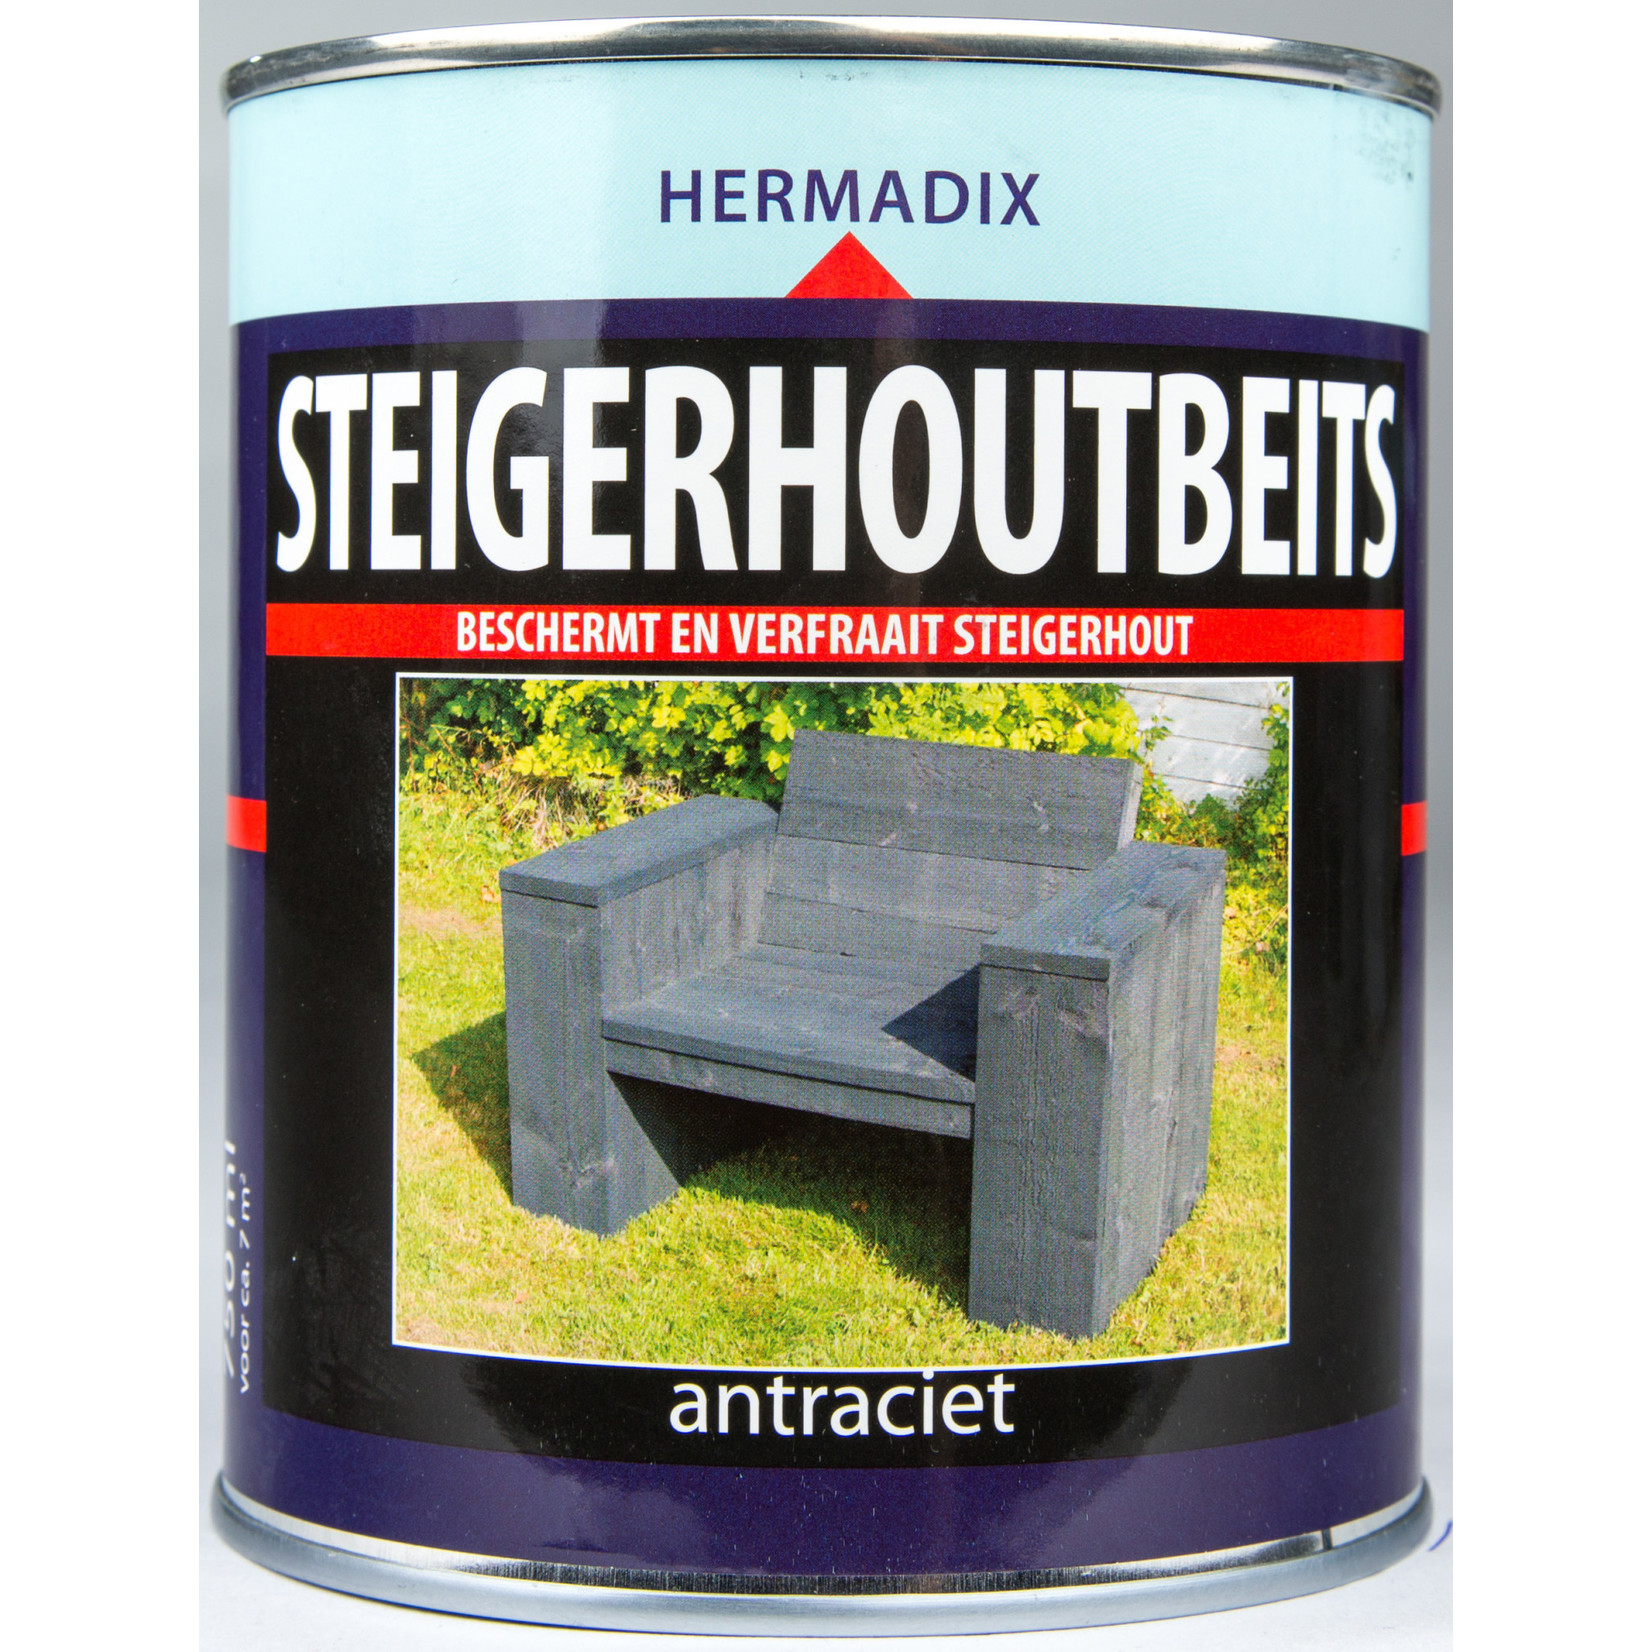 Hermadix steigerhout beits